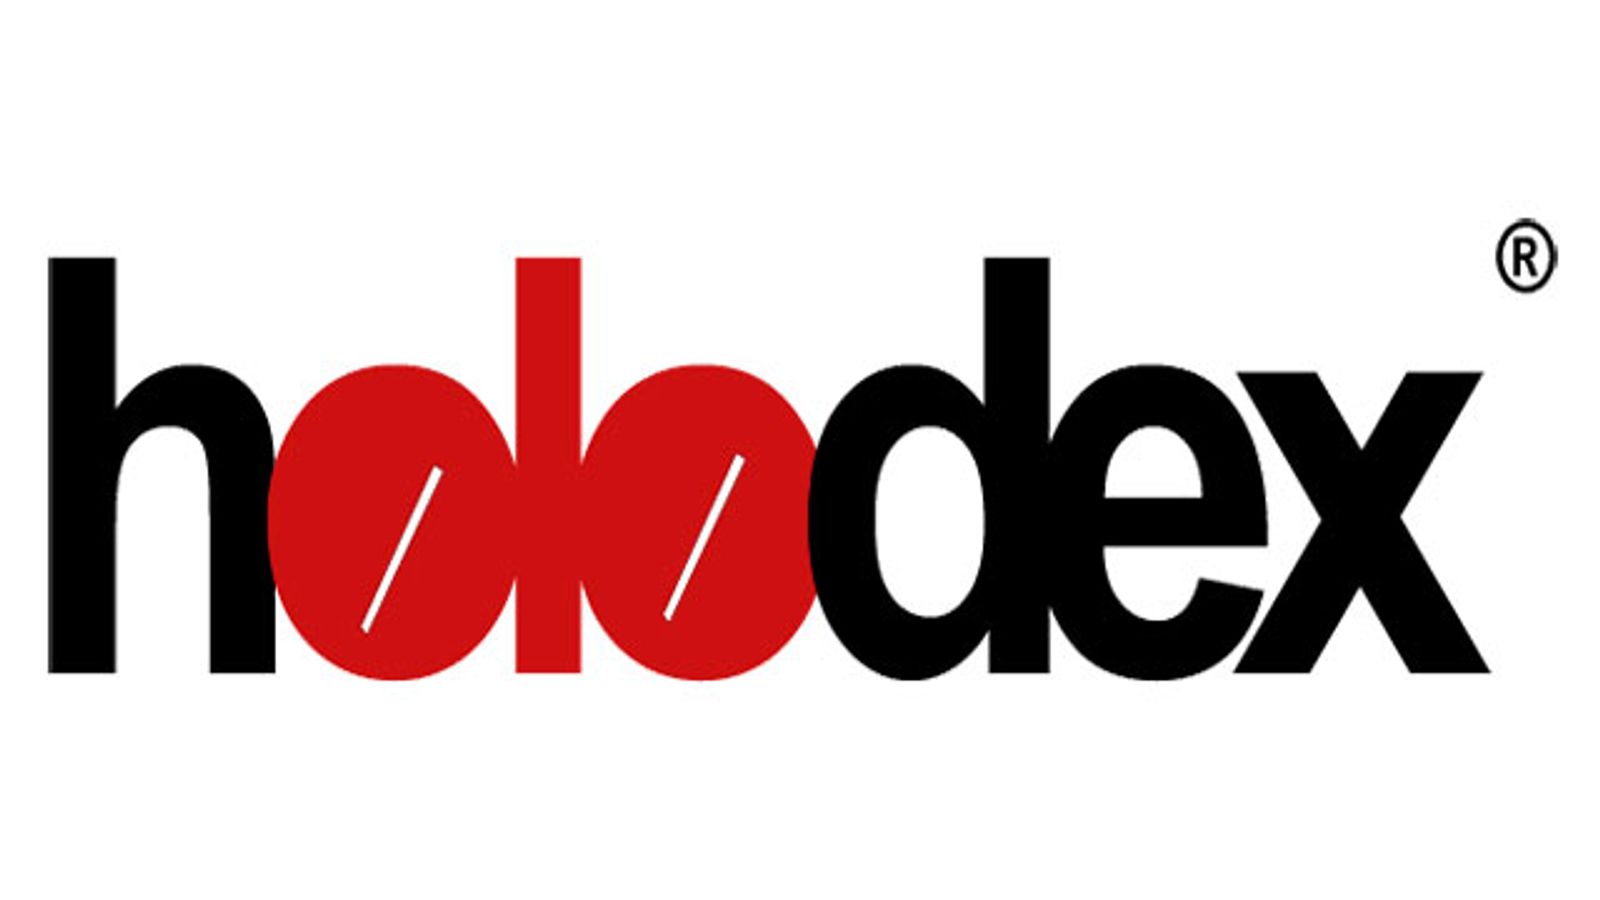 Holodex.com Launches